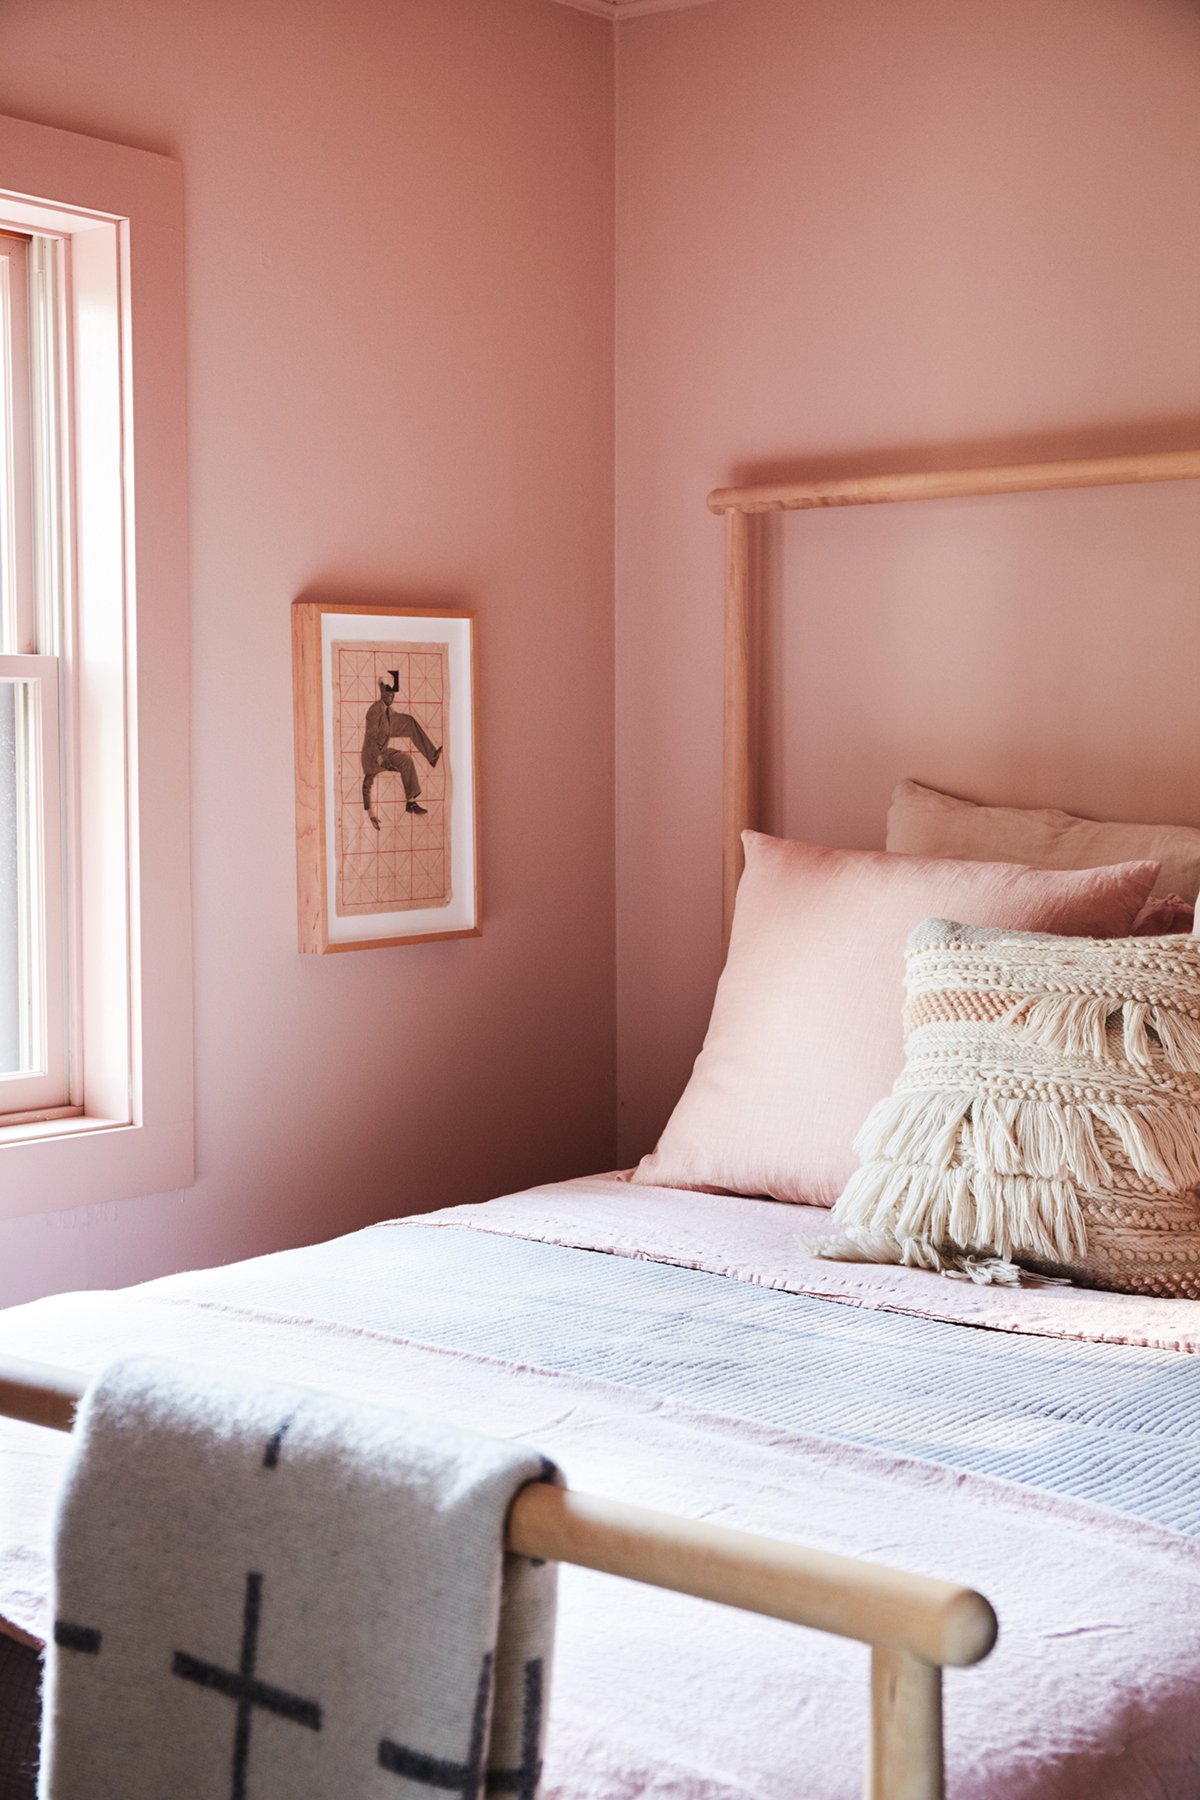 Paul Denoly and Nick Blaine's peach bedroom